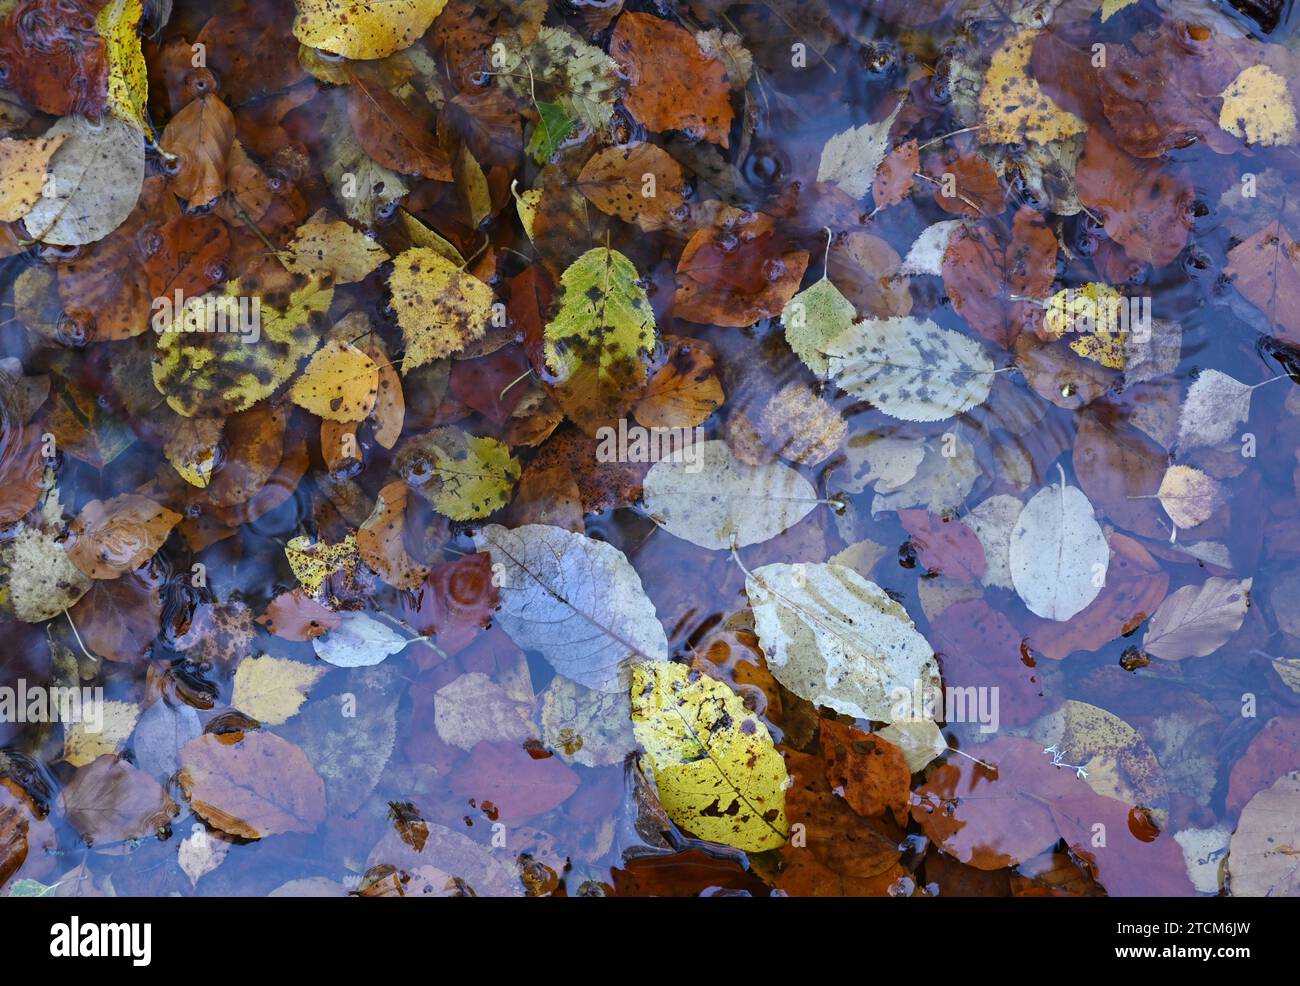 Herbstlaub, Blaetter, aufgenommen in Zella-Mehlis, Thueringen, AM 5. Novembre 2013. *** Foglie d'autunno, prese a Zella Mehlis, Turingia, il 5 novembre 2013 Foto Stock